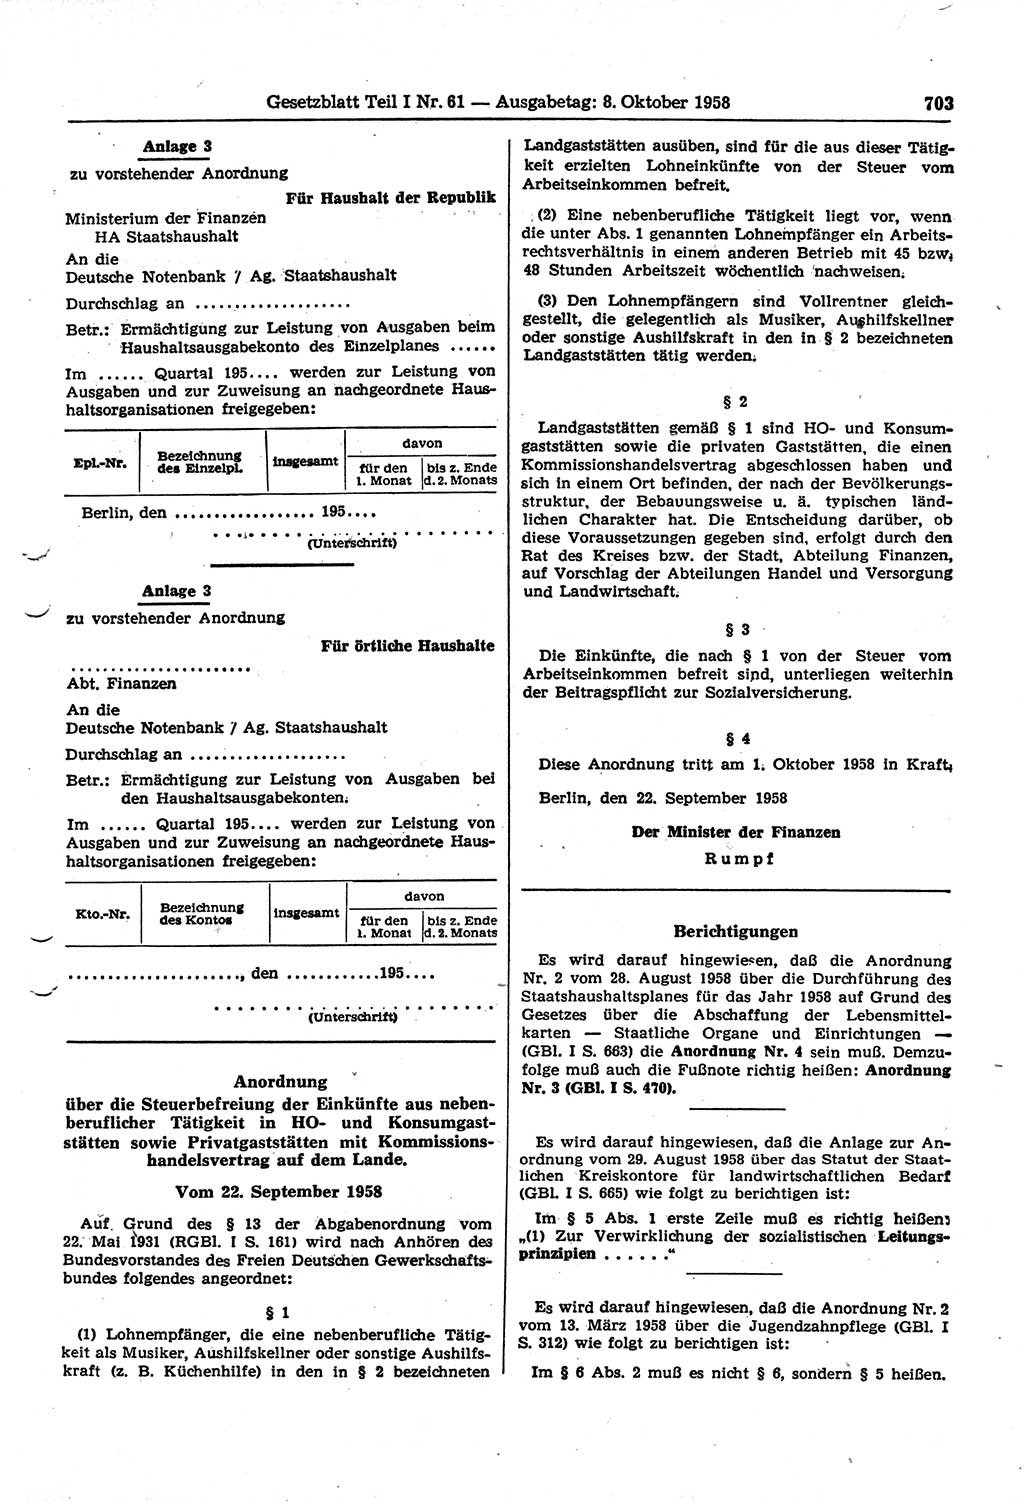 Gesetzblatt (GBl.) der Deutschen Demokratischen Republik (DDR) Teil Ⅰ 1958, Seite 703 (GBl. DDR Ⅰ 1958, S. 703)